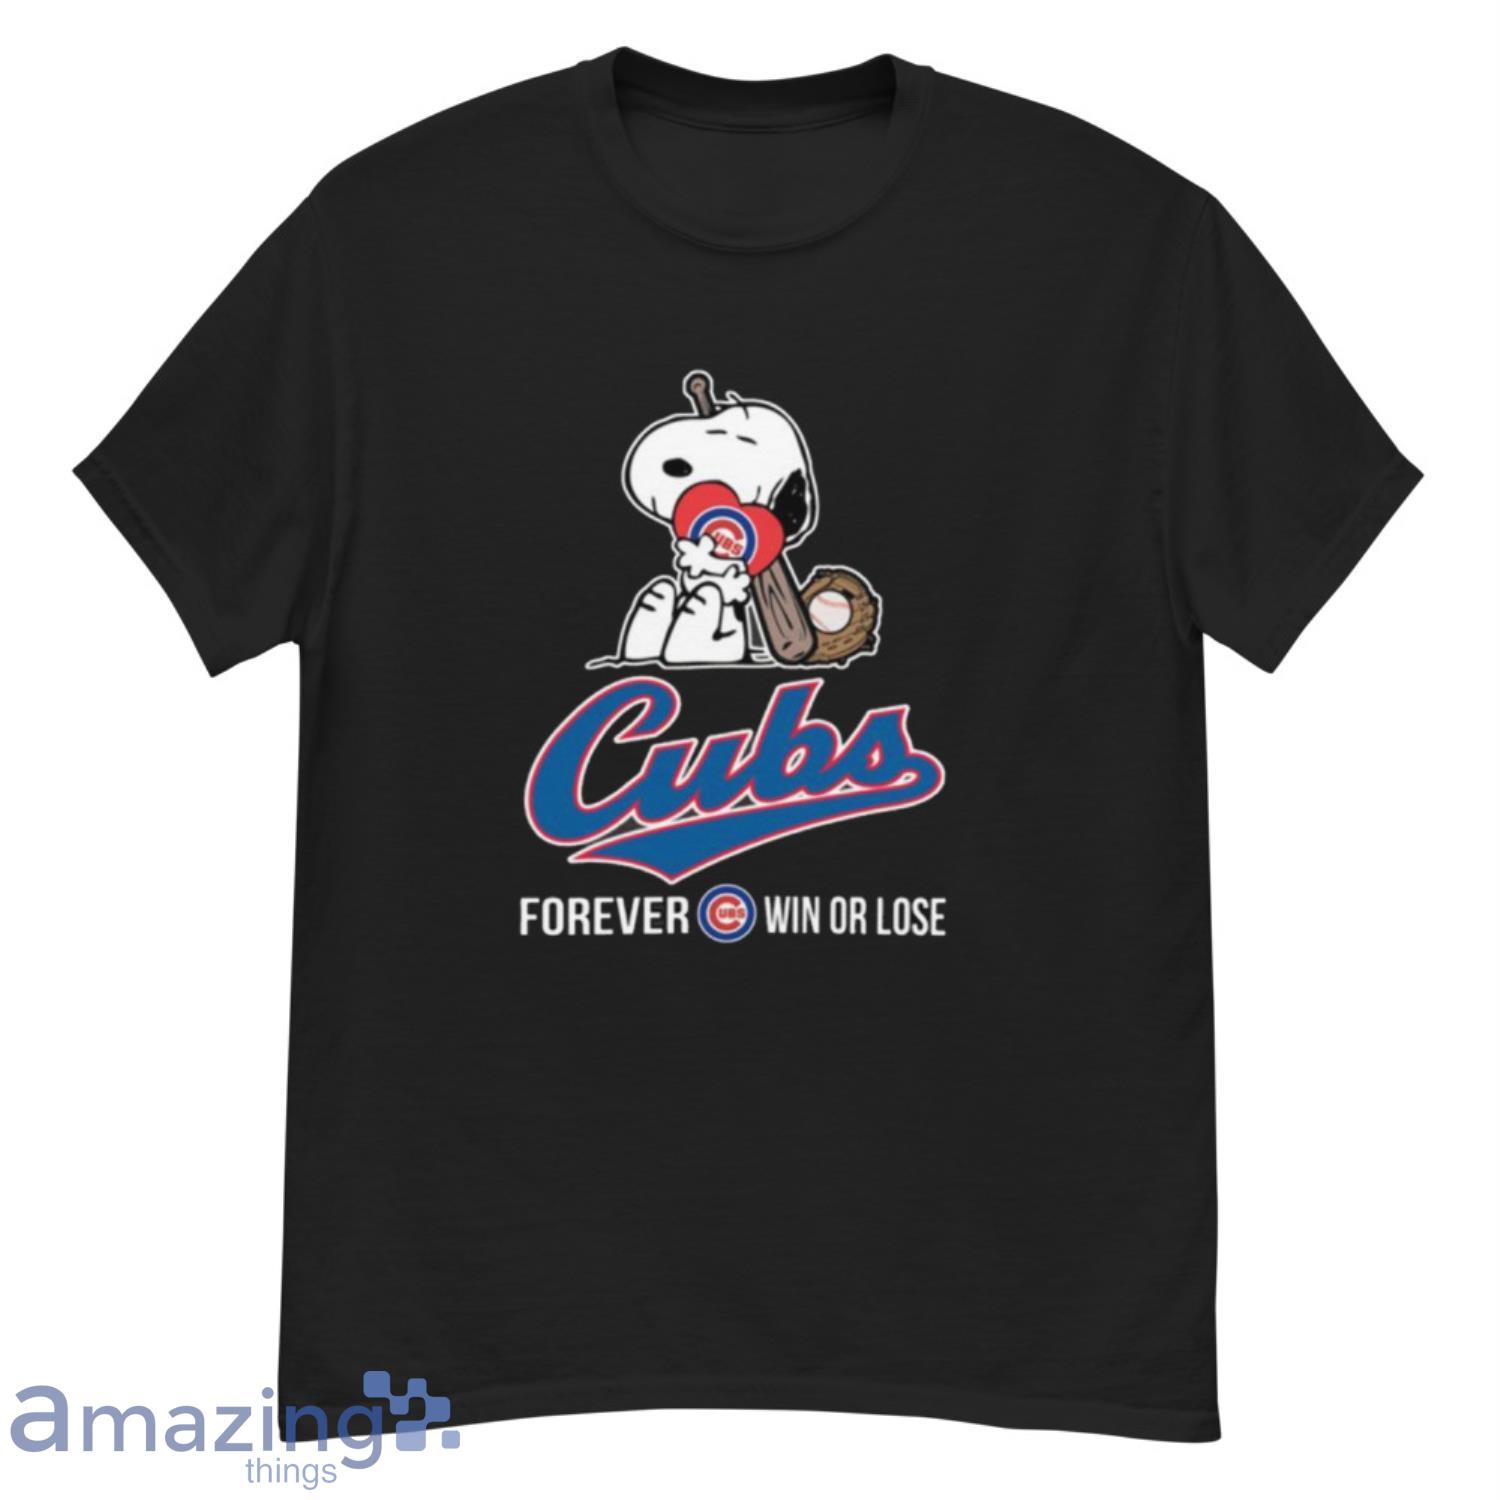 MLB Chicago Cubs Boys' Poly T-Shirt - L